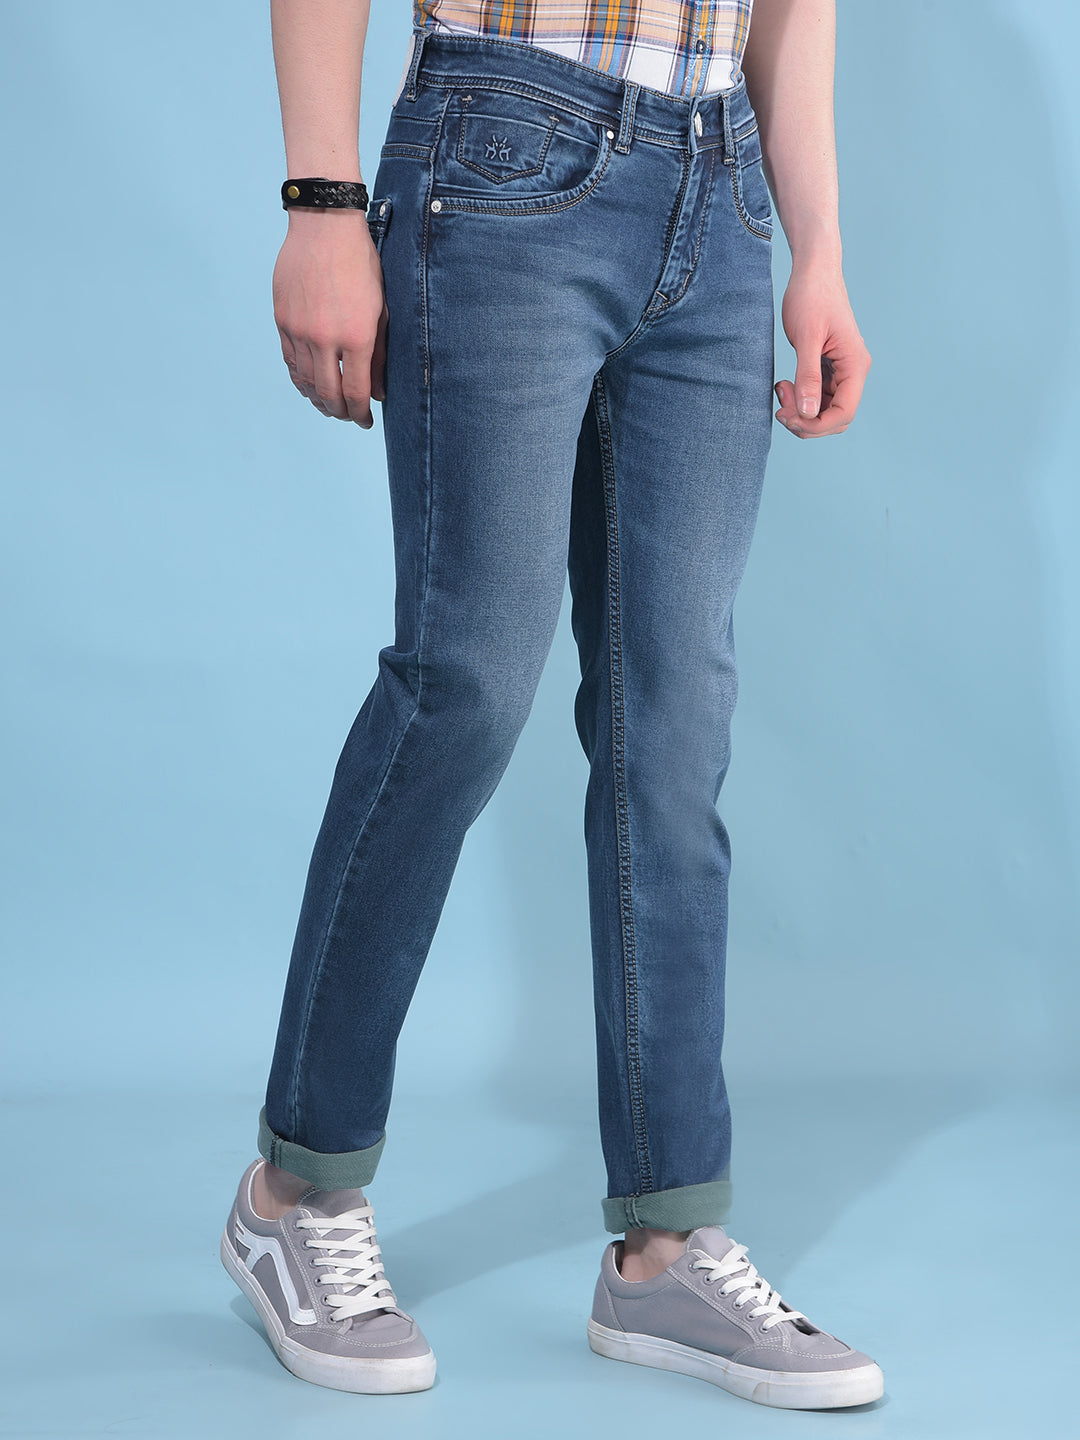 Blue Cotton Jeans-Men Jeans-Crimsoune Club